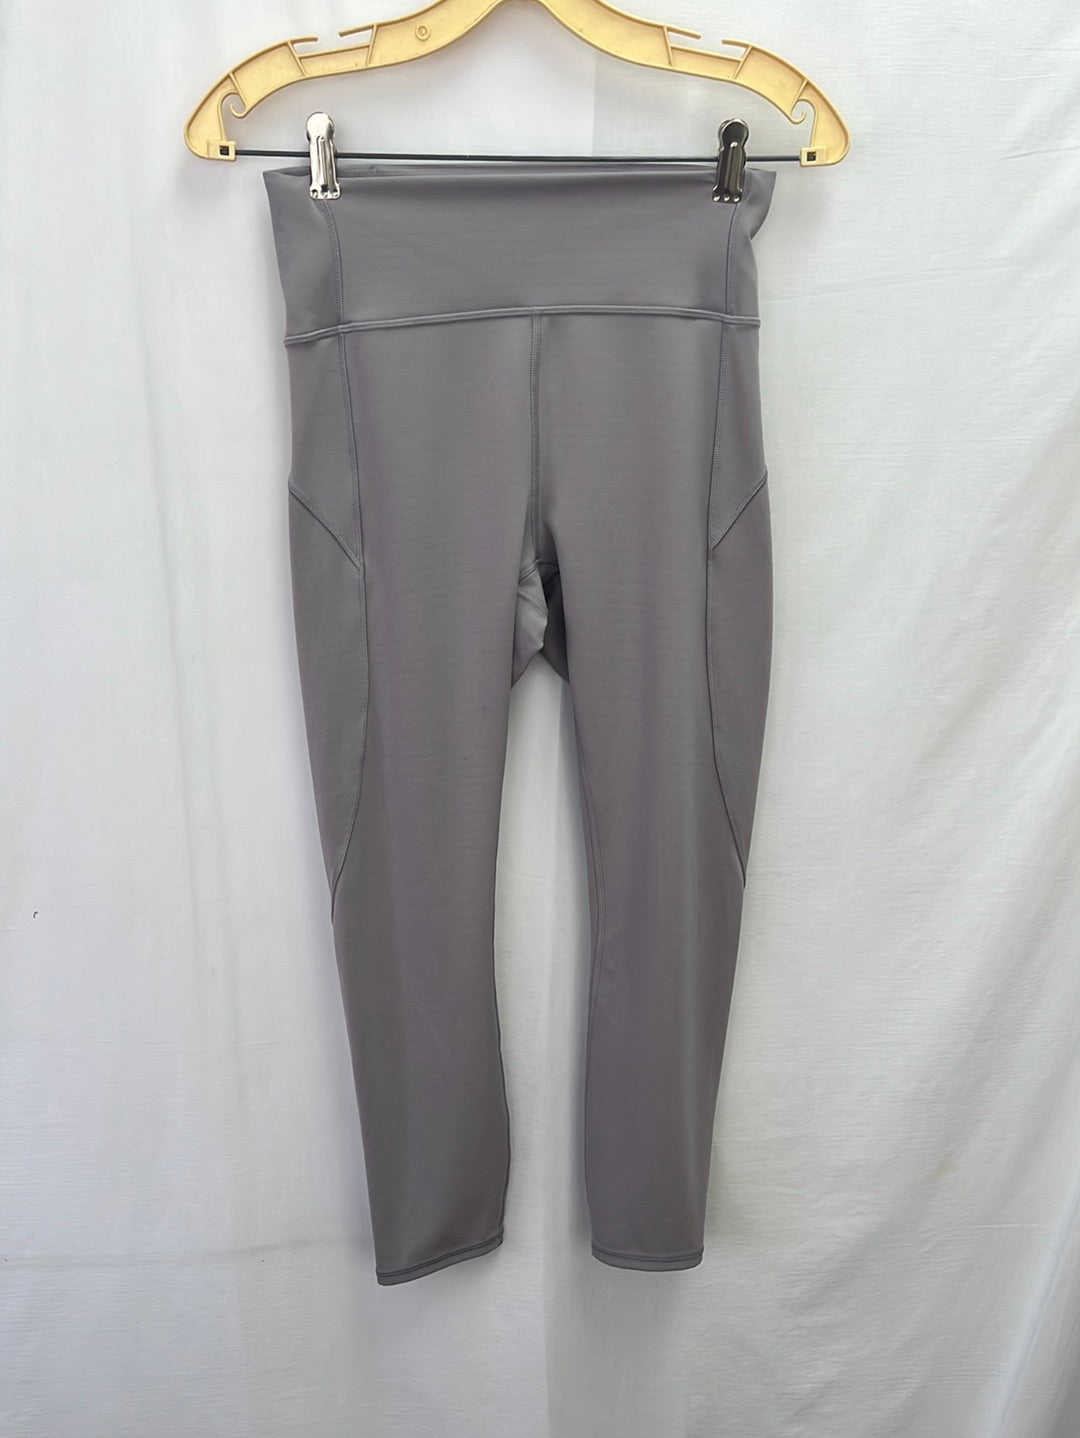 LULULEMON Grey Yoga Pants/Leggings with Back Inside Pocket -- Size 6